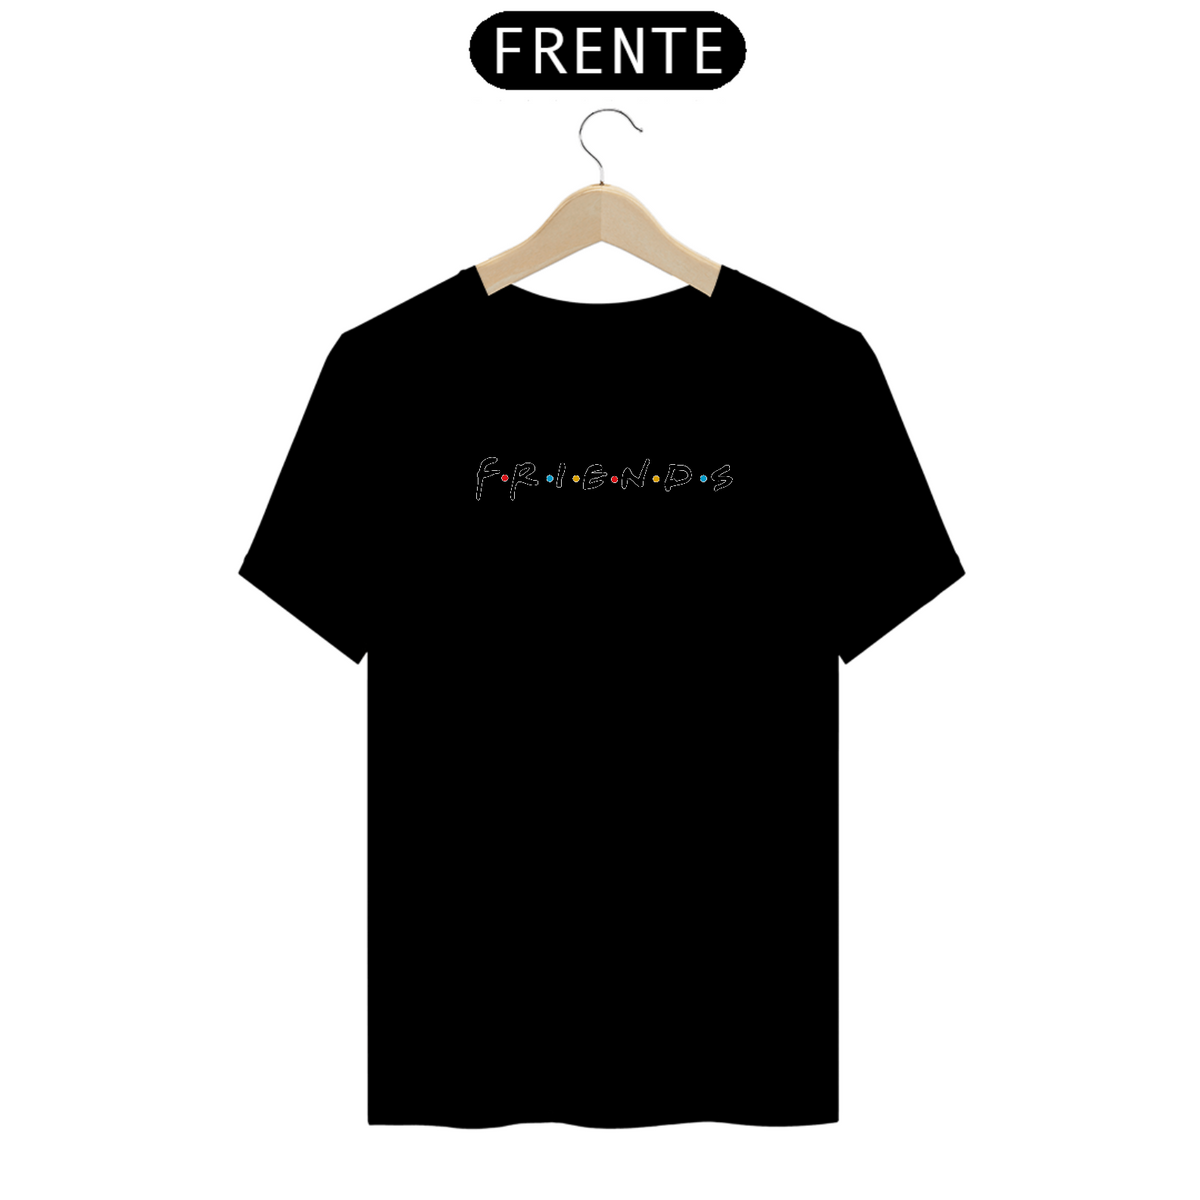 Nome do produto: Camiseta Friends